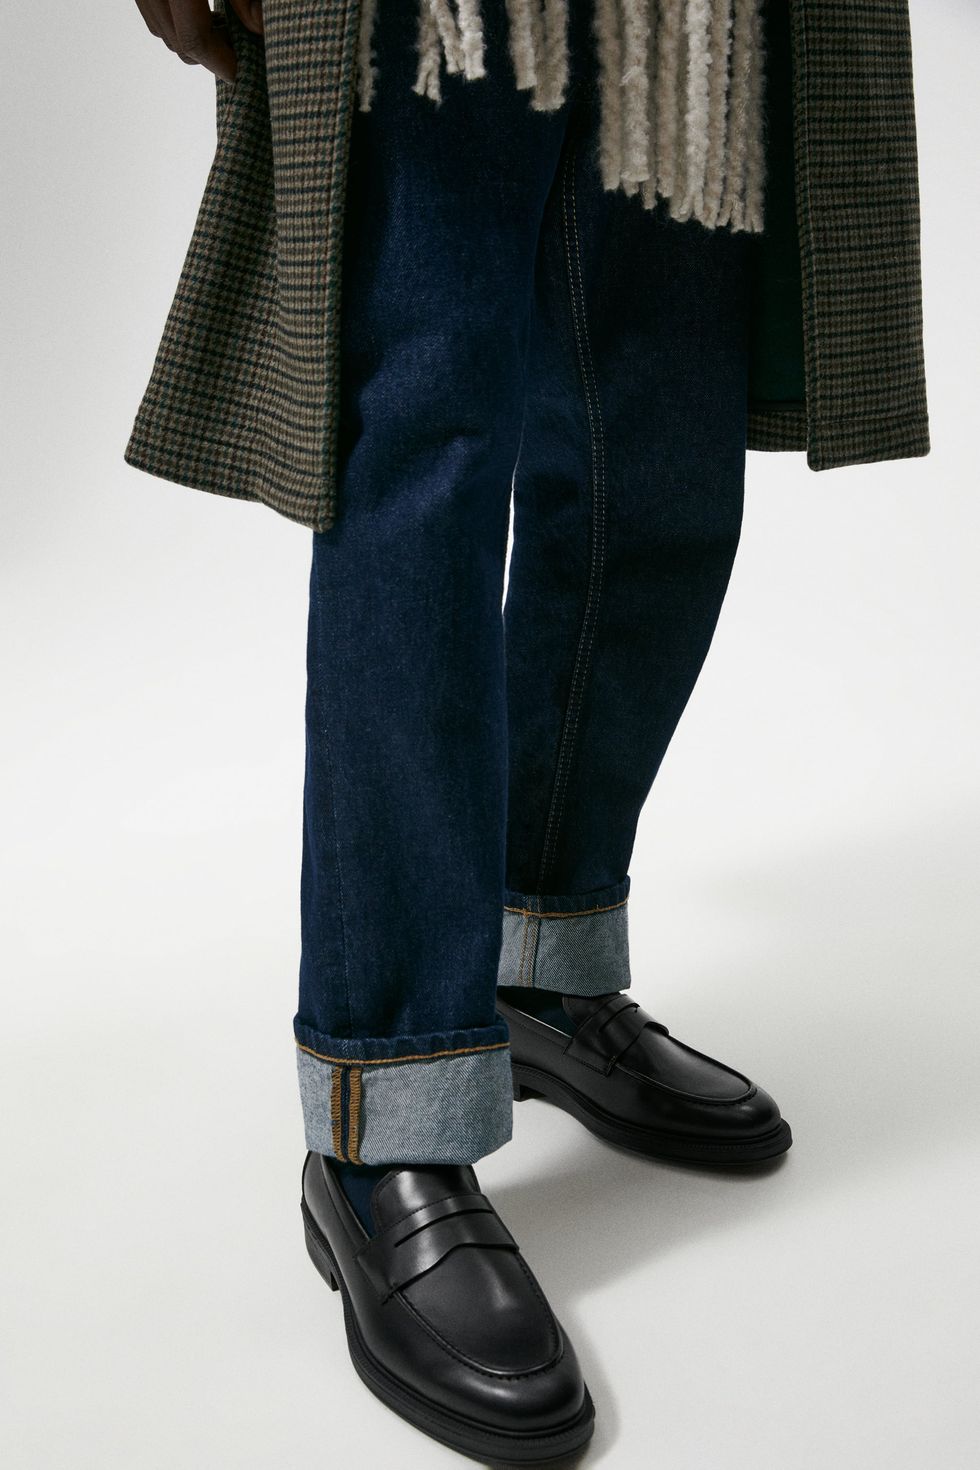 Las mejores ofertas en Zapatos Informales de Goma Louis Vuitton para hombres